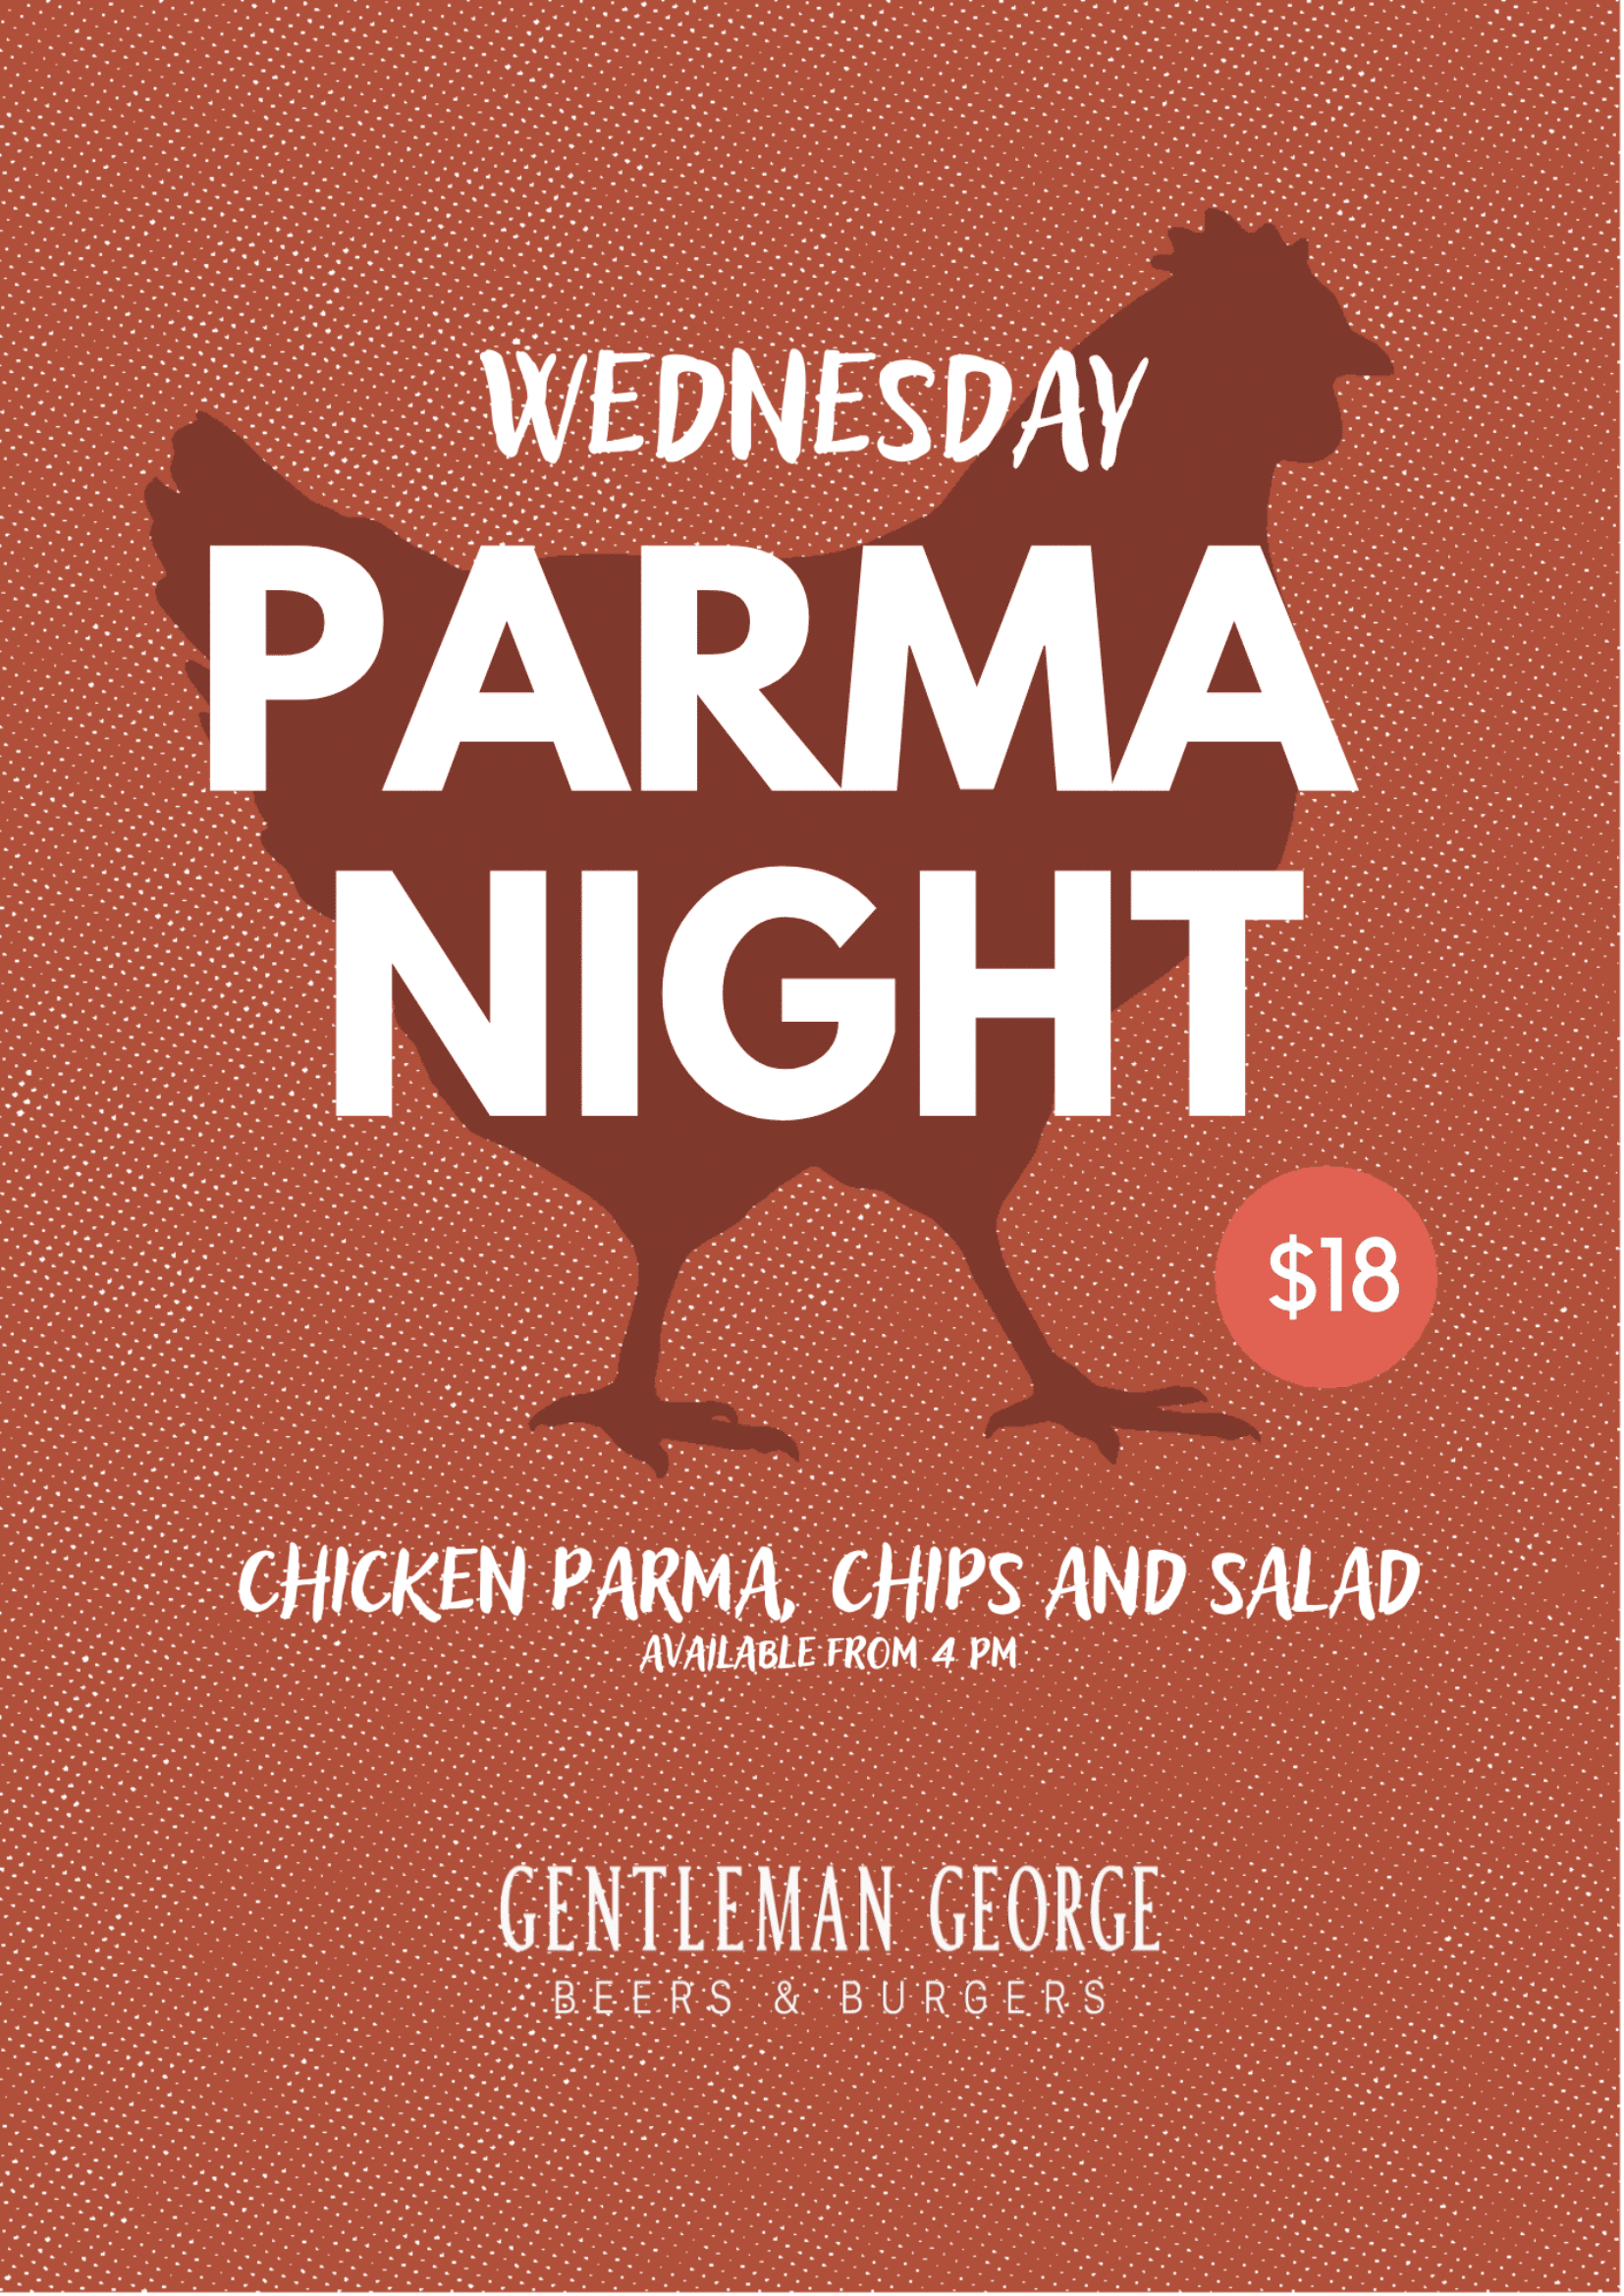 $18 Parma Night